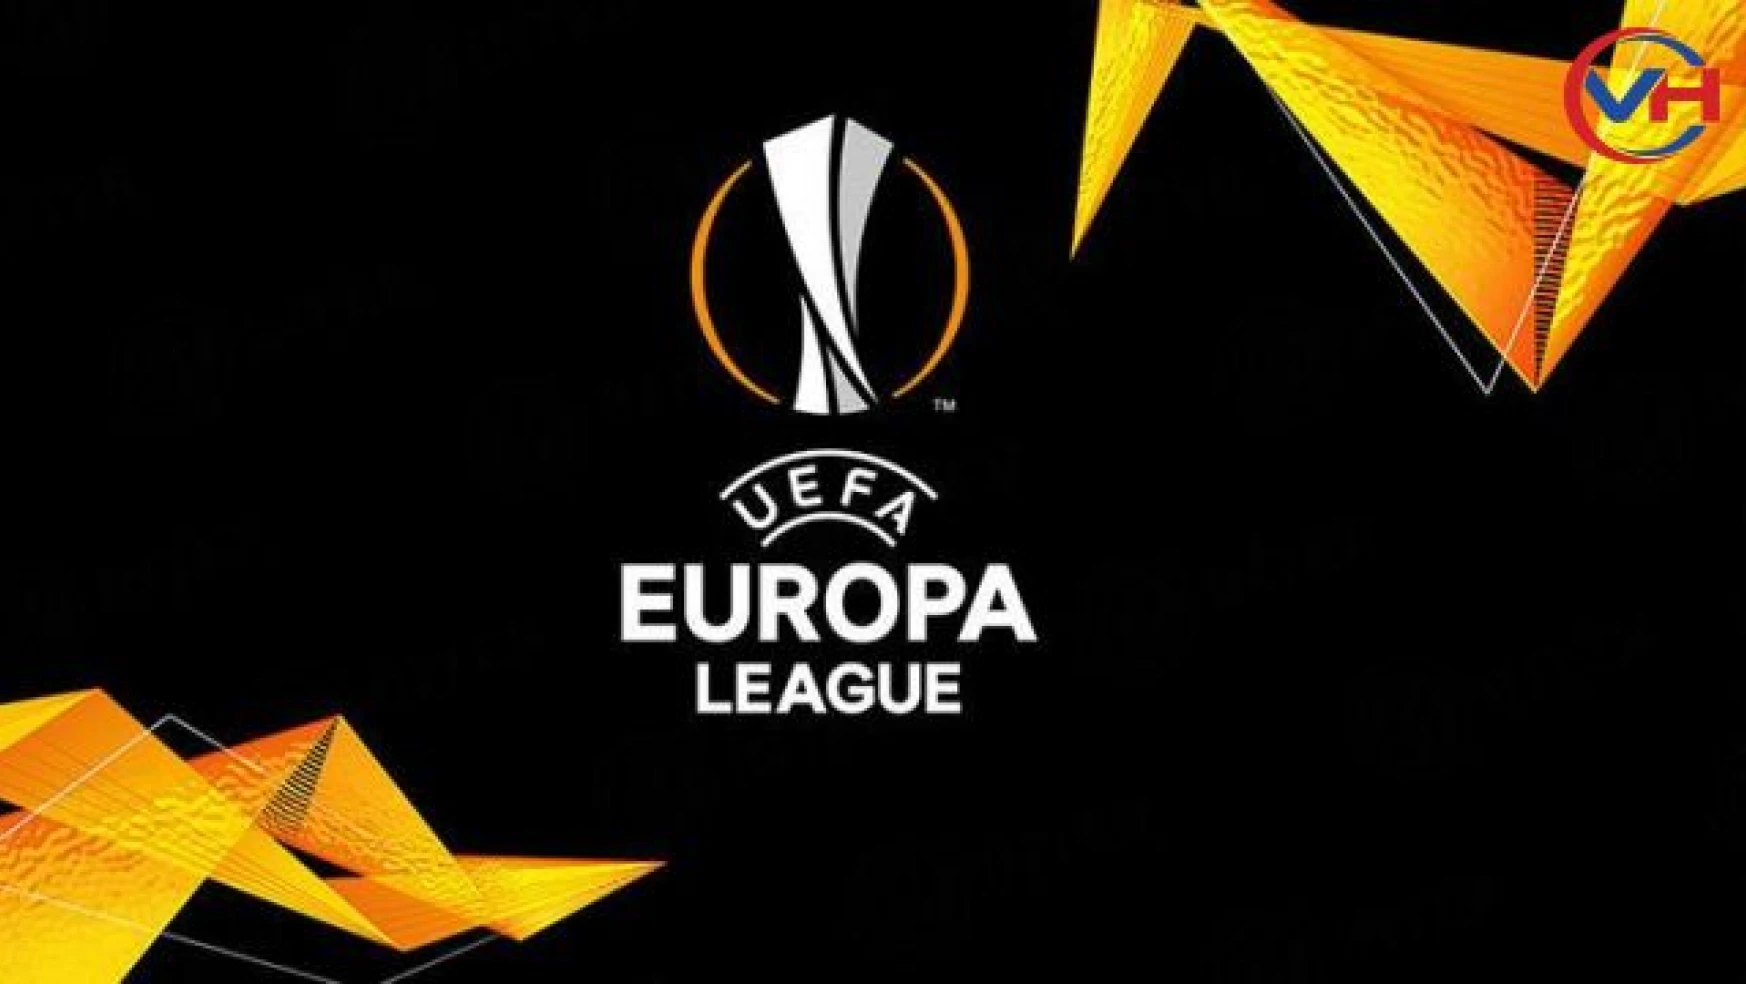 Galatasaray Avrupa Ligi puan durumu | Galatasaray kaçıncı sırada? UEFA Avrupa Ligi E puan durumu ve fikstürü